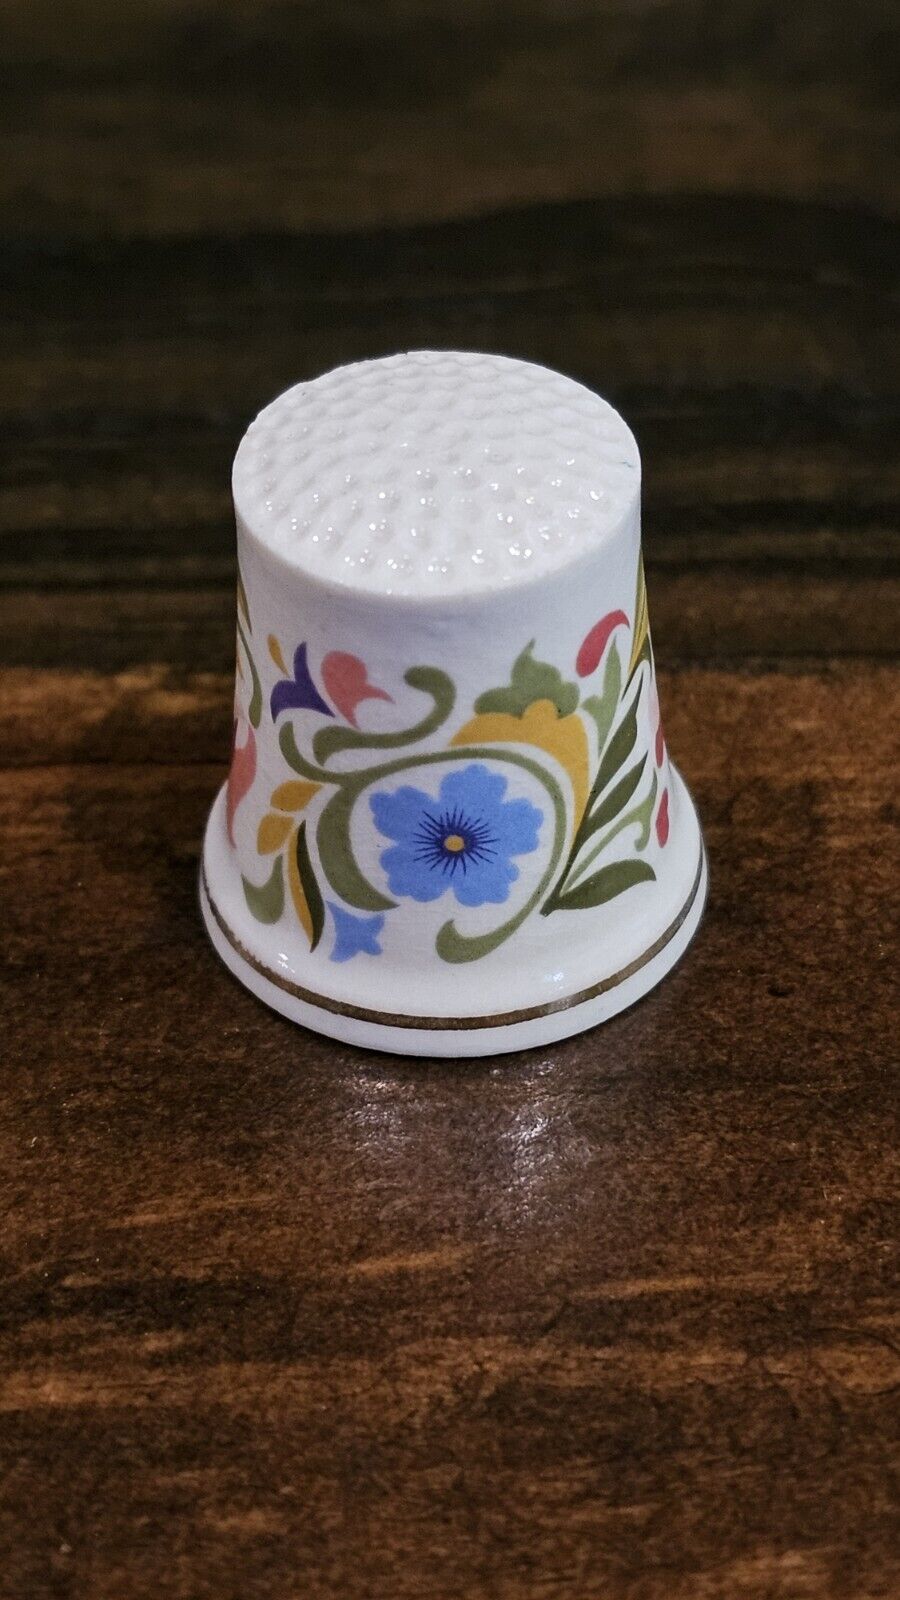 Vintage 1970's Avon Porcelain Sewing Thimble Colorful Floral Design